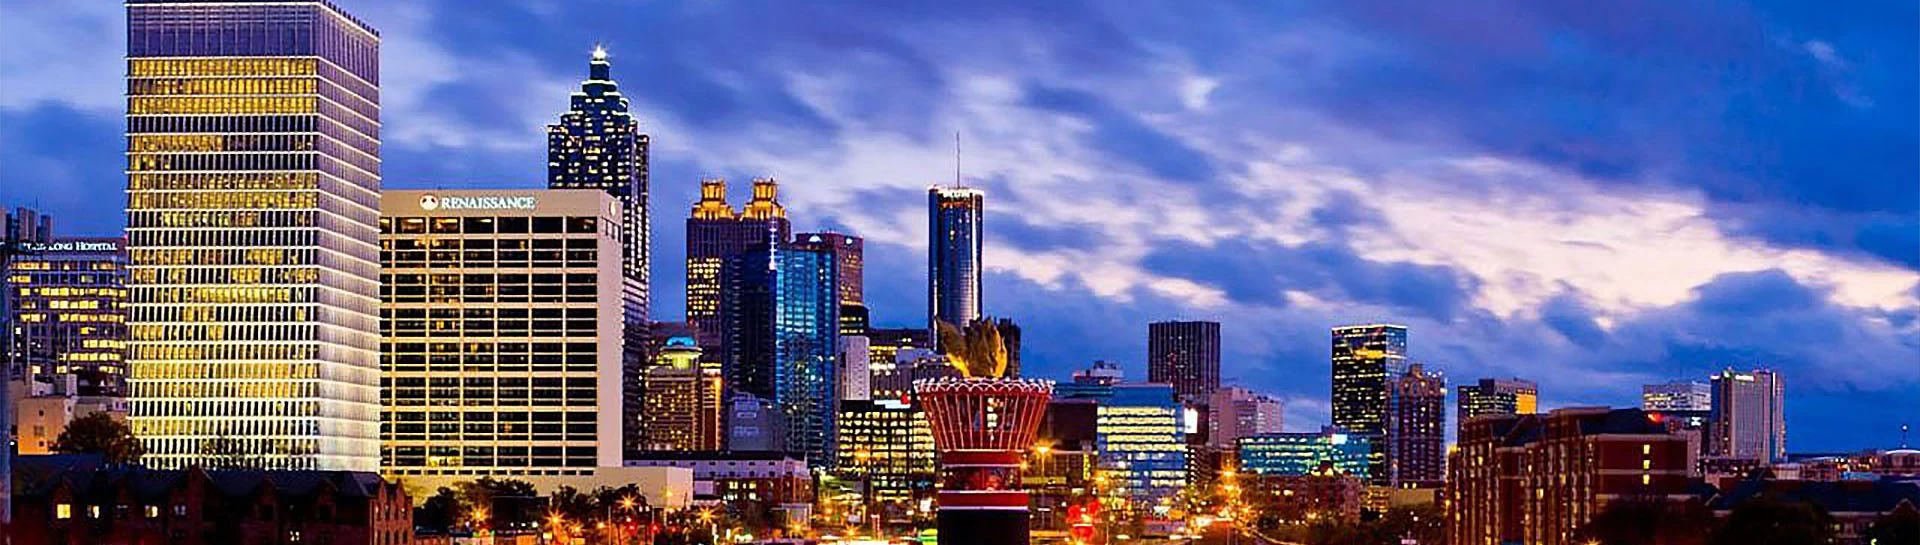 Atlanta Skyline panoramic